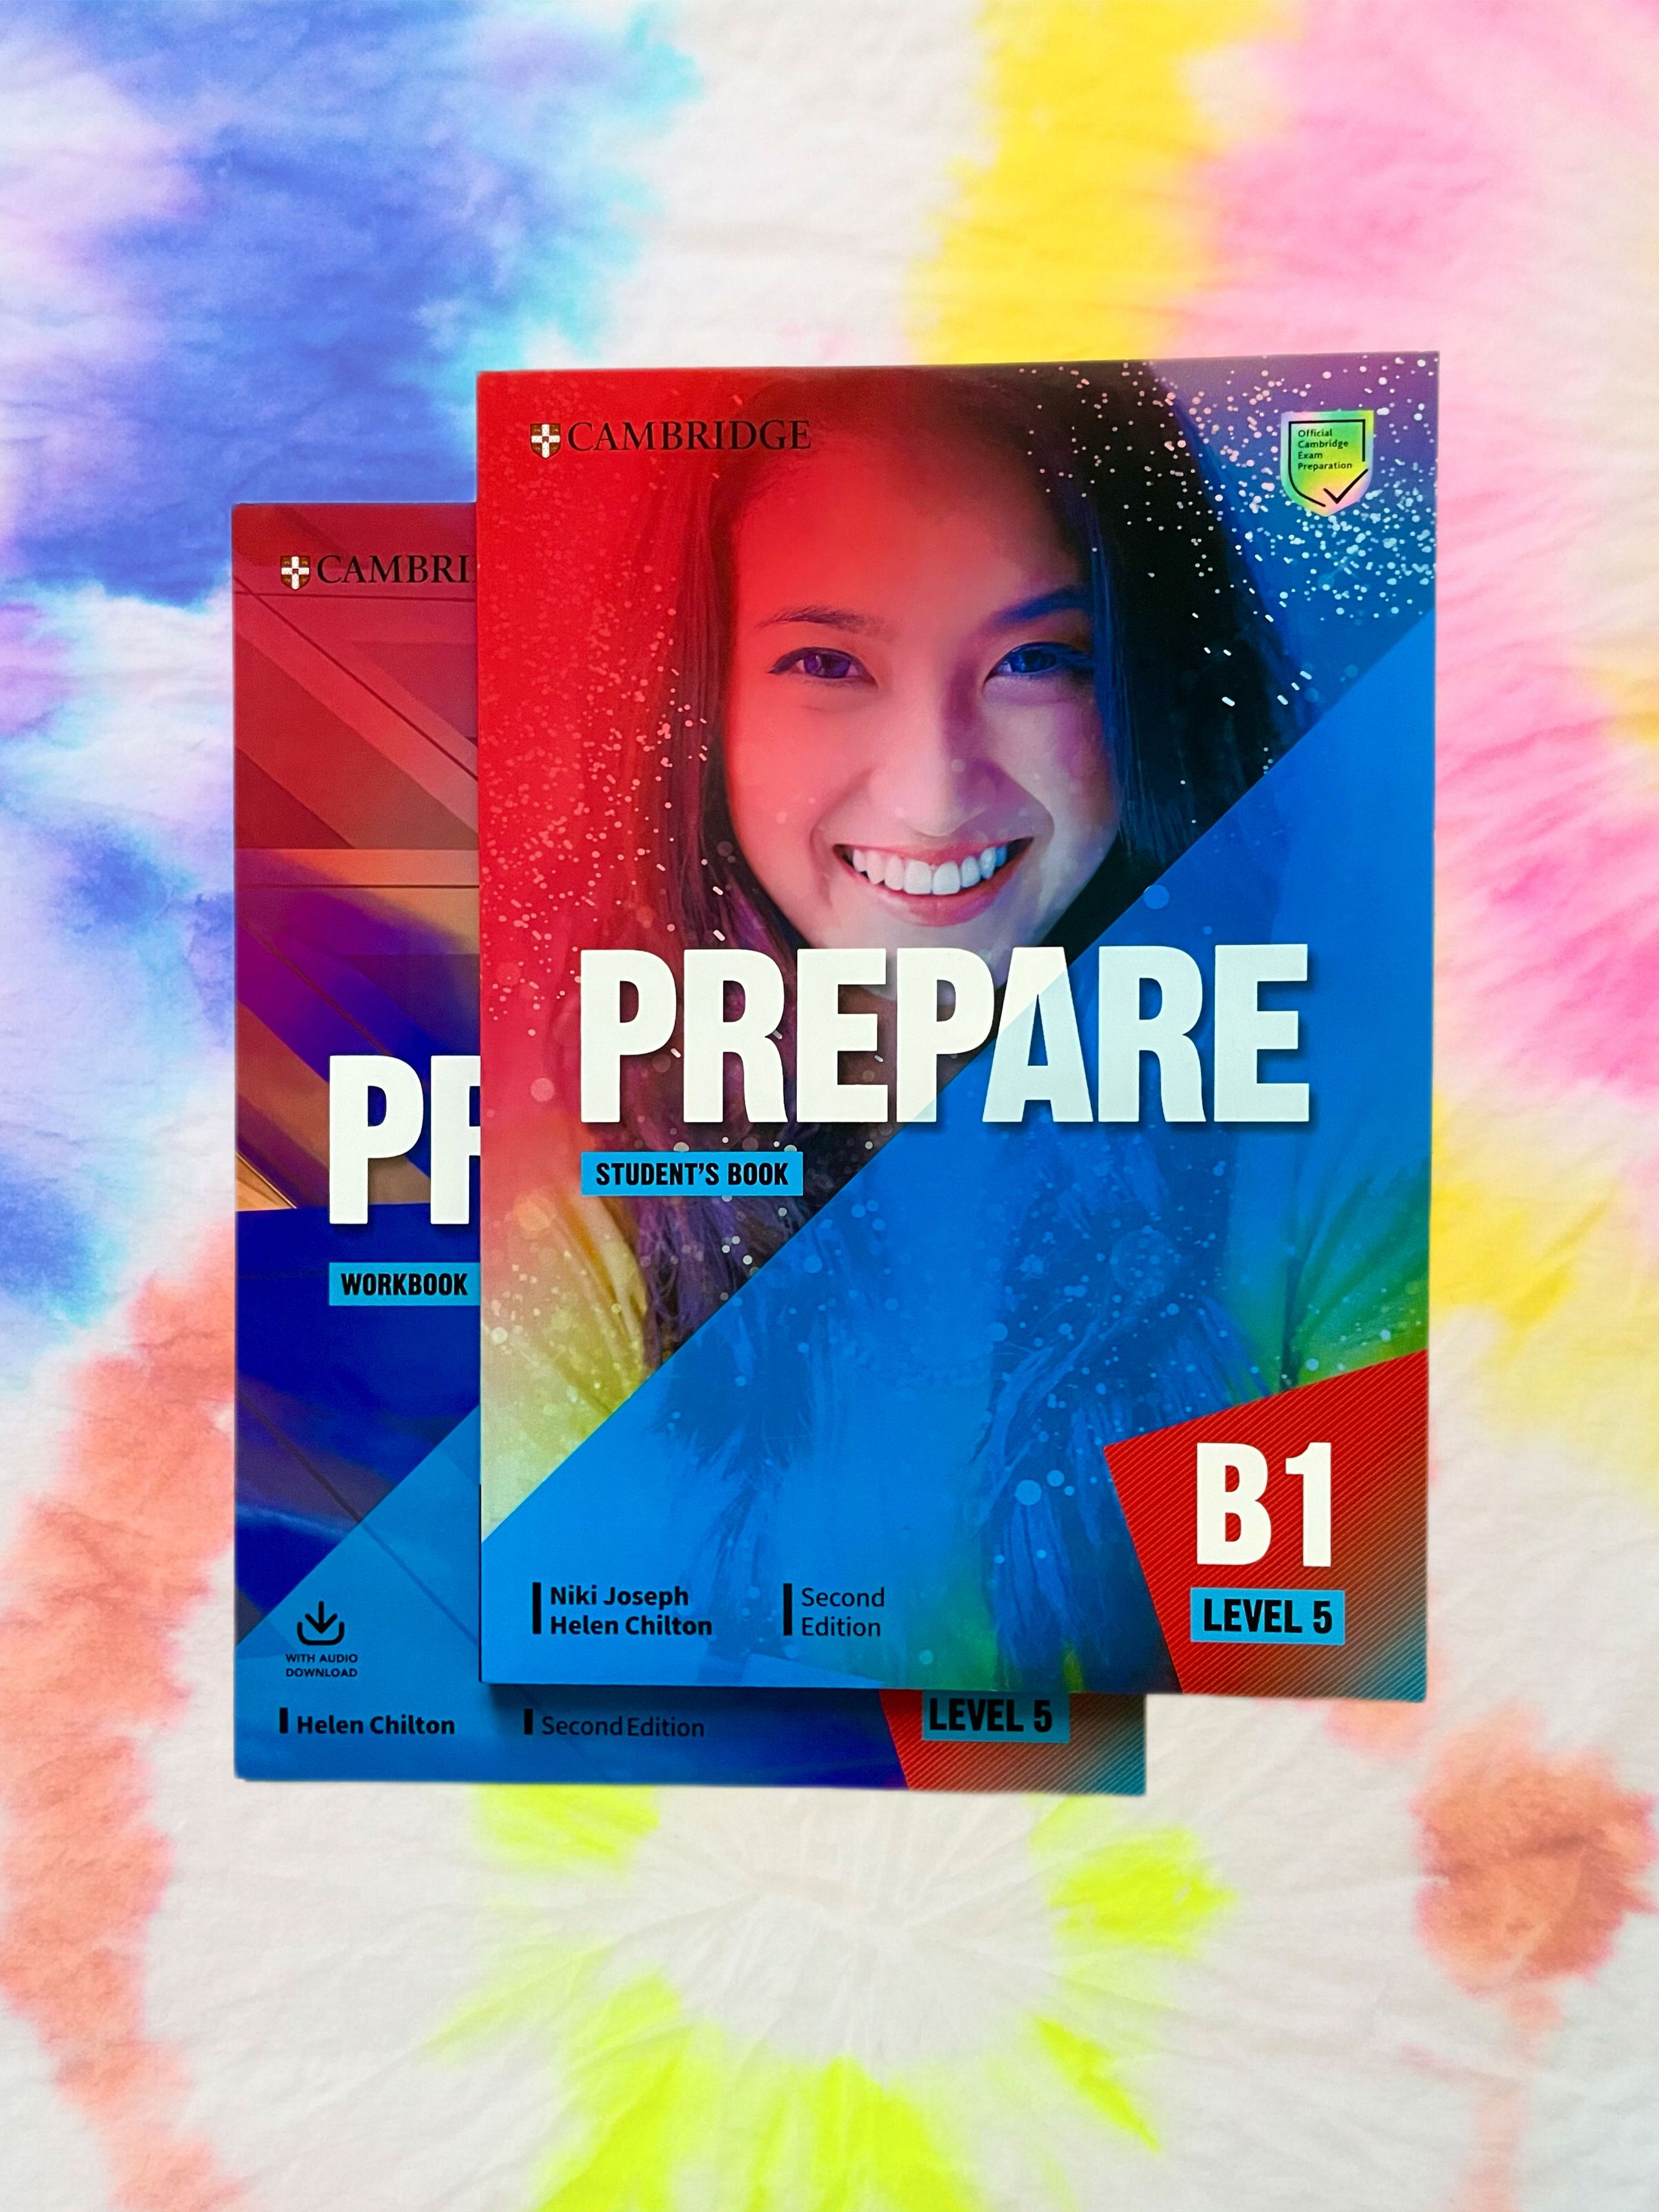 Prepare level 5. Prepare учебник. Учебник Cambridge prepare b1. Prepare Level 5 student's book. Учебник по английскому для работы.